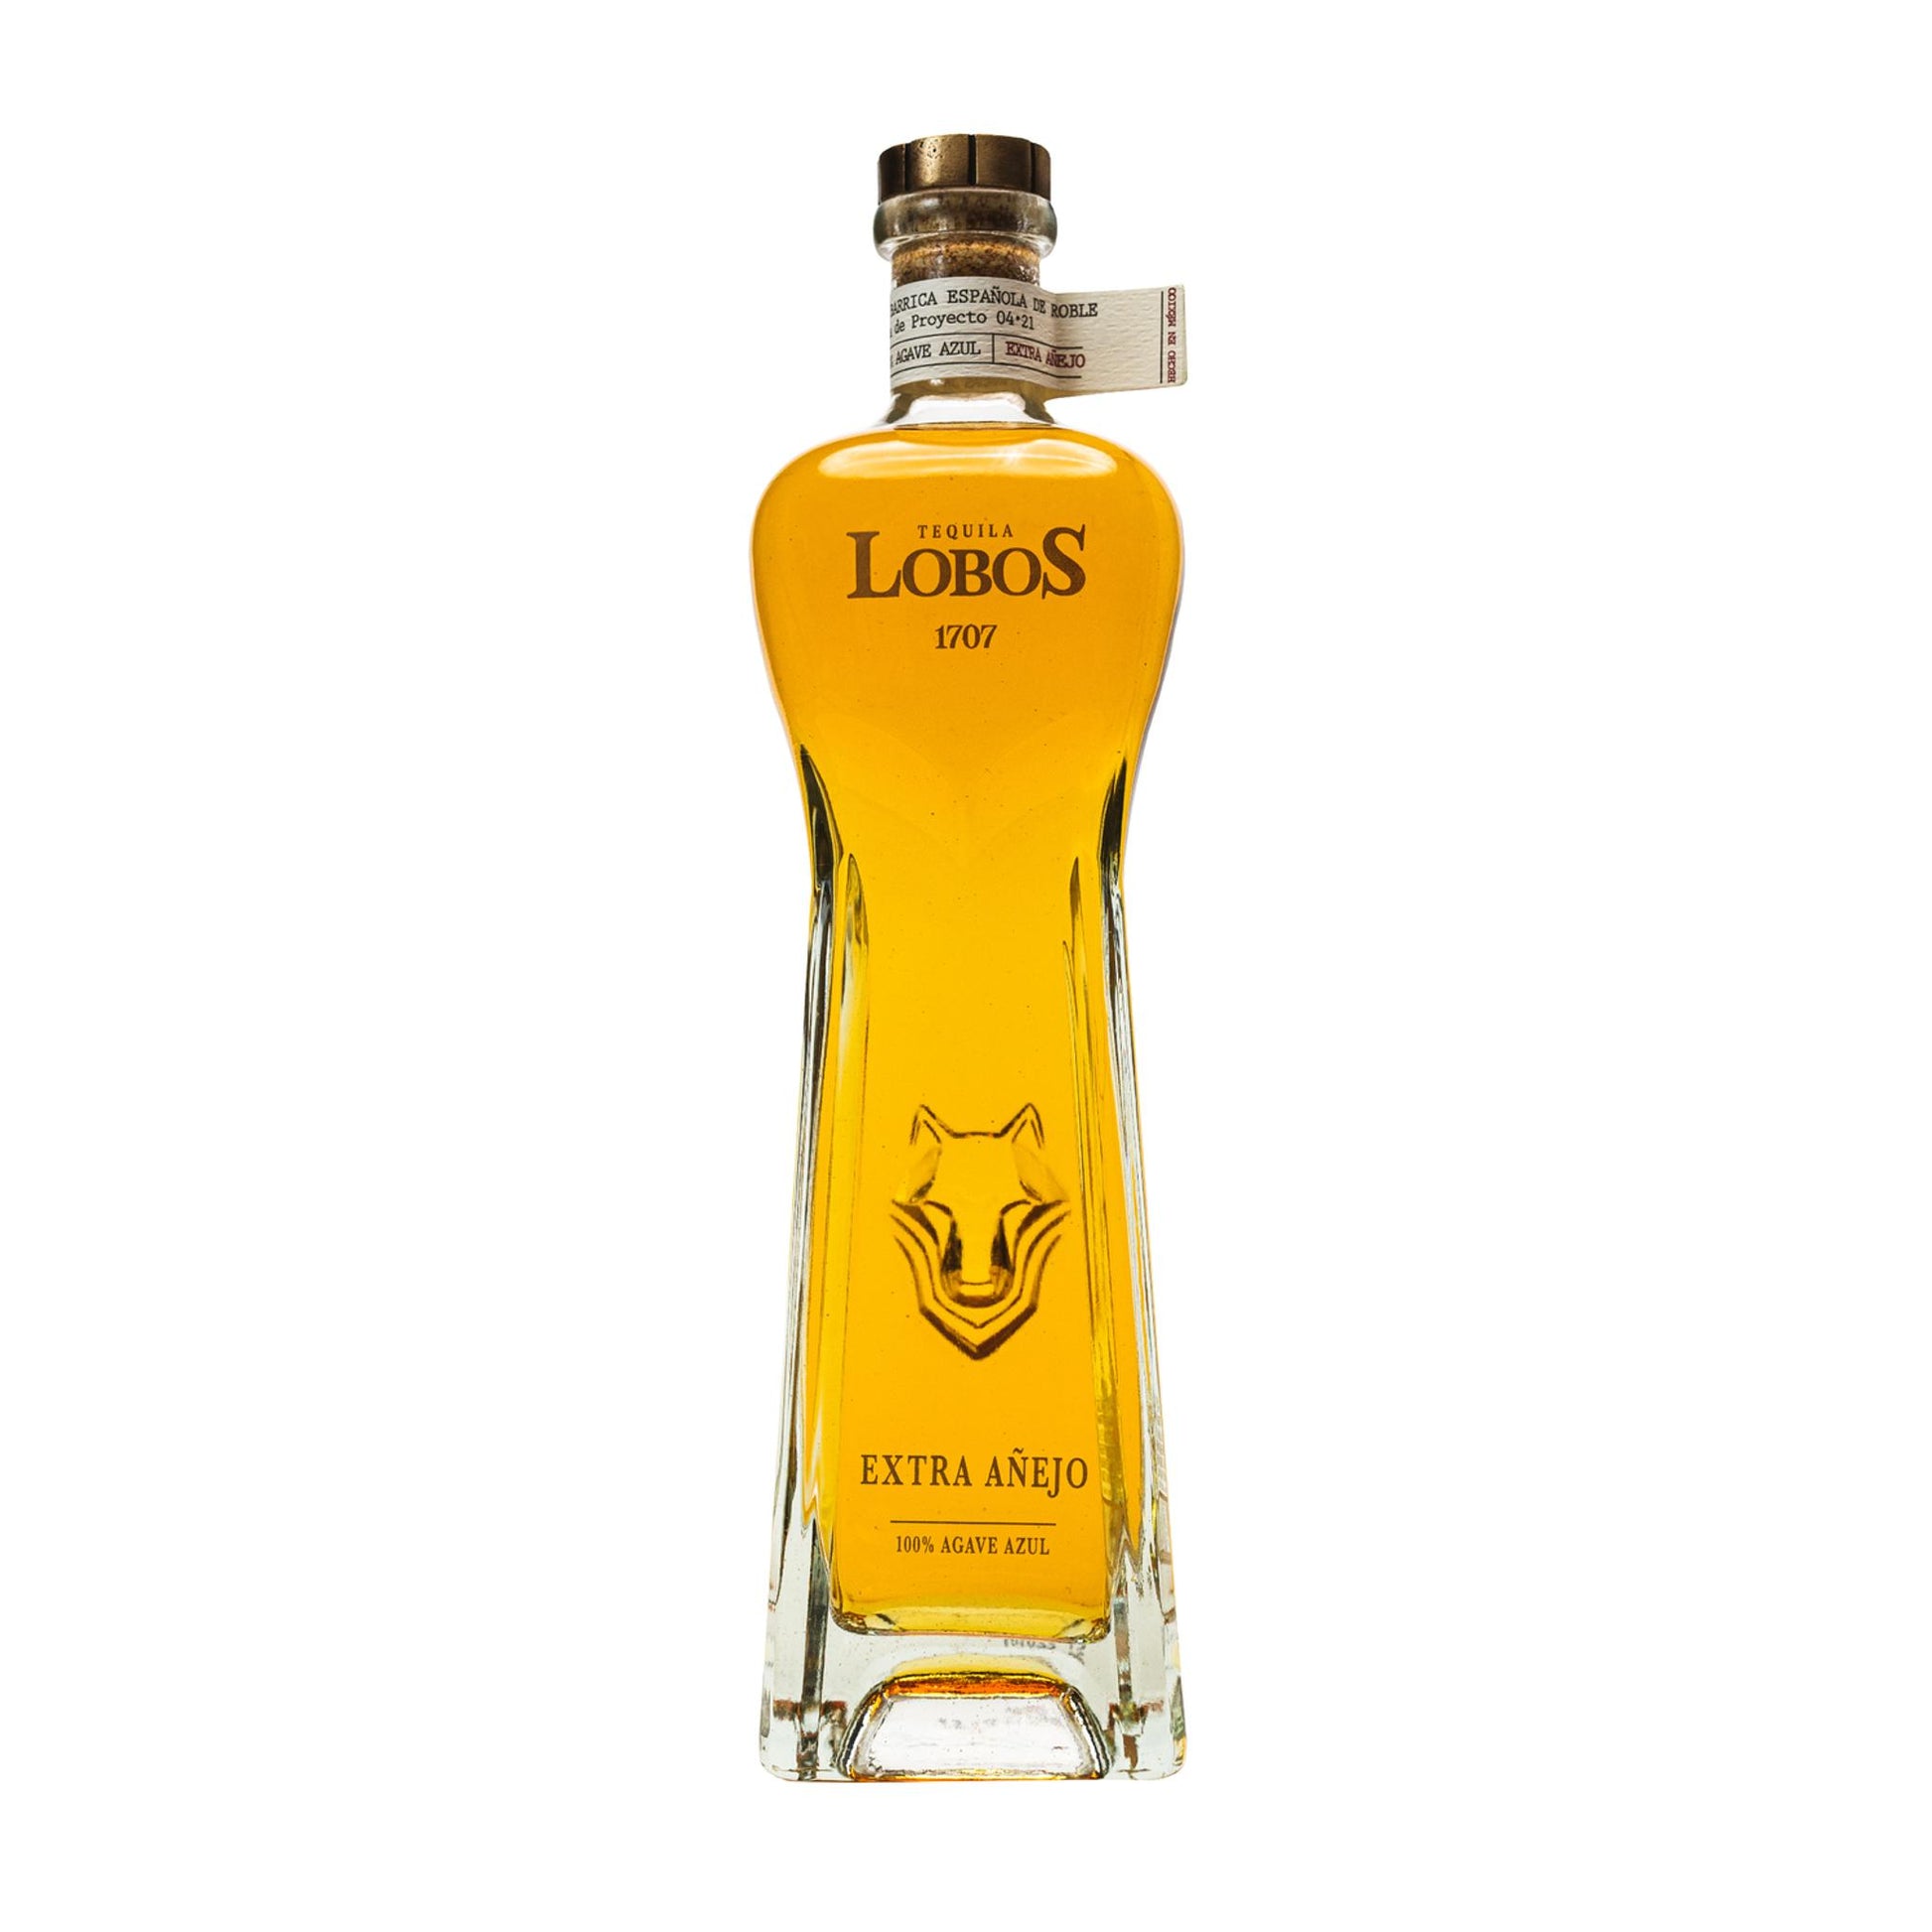 Lobos 1707 Tequila Extra Anejo - Liquor Geeks